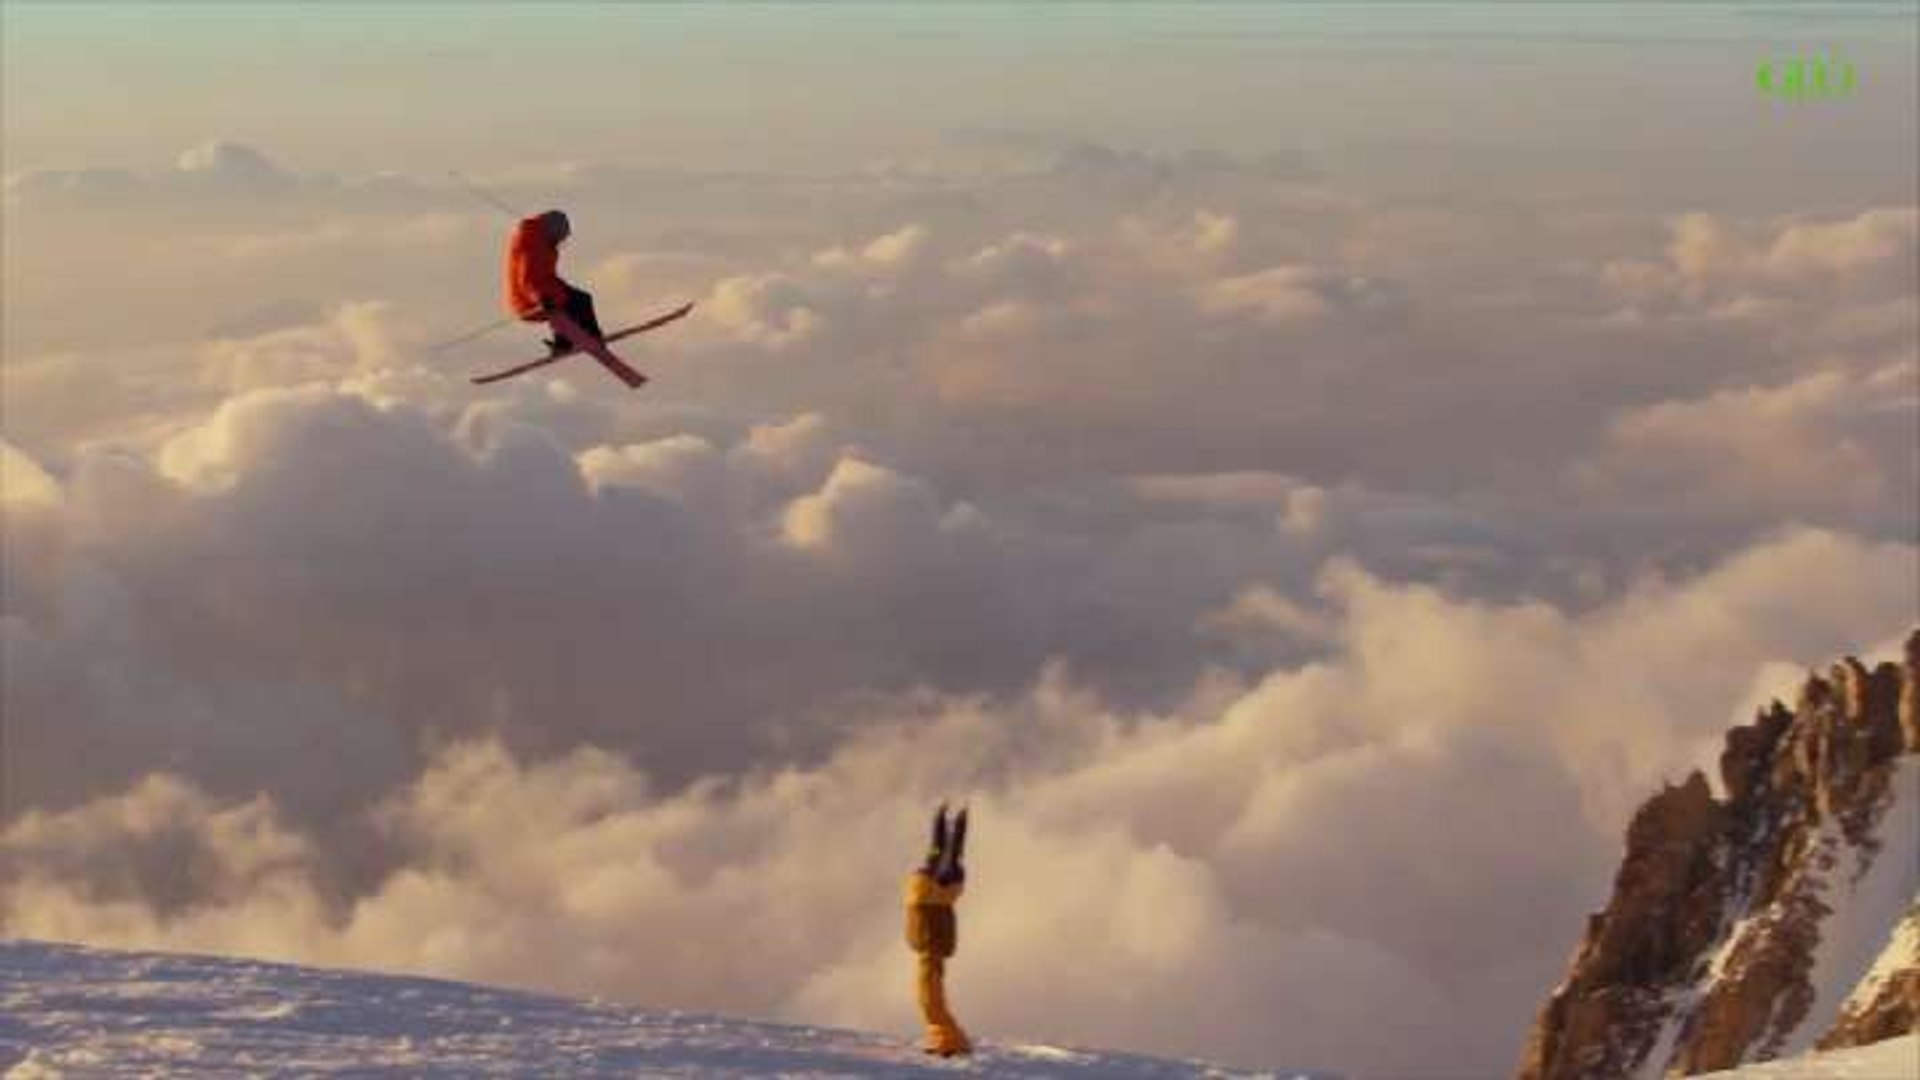 VIDÉO. Cette descente à ski filmée en caméra embarquée par Candide Thovex  va vous donner le vertige